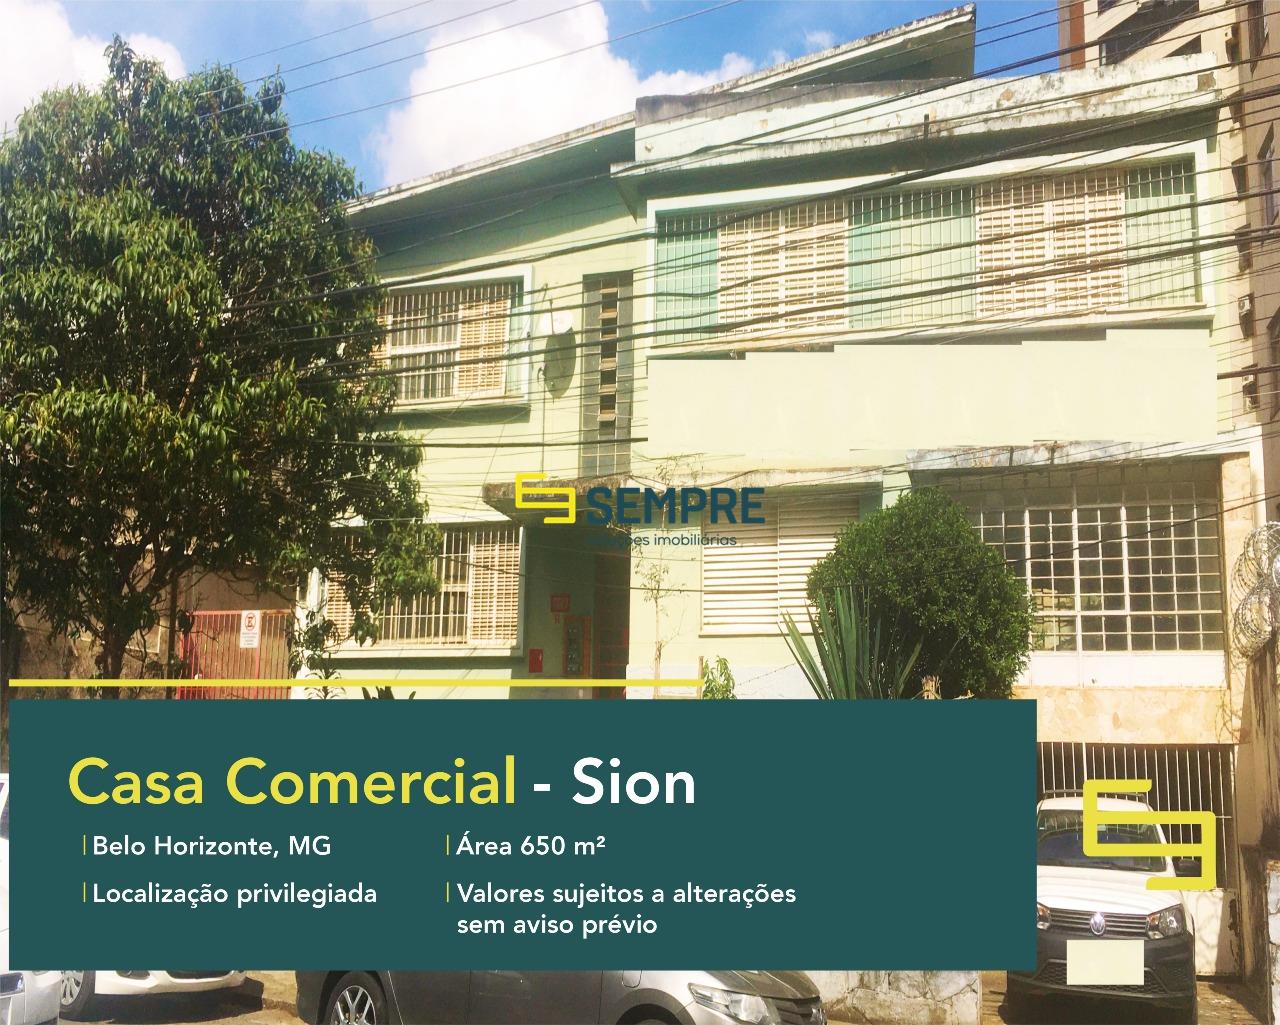 Casa comercial no bairro Sion para alugar em Belo Horizonte, excelente localização. O estabelecimento comercial conta com área de 650 m².